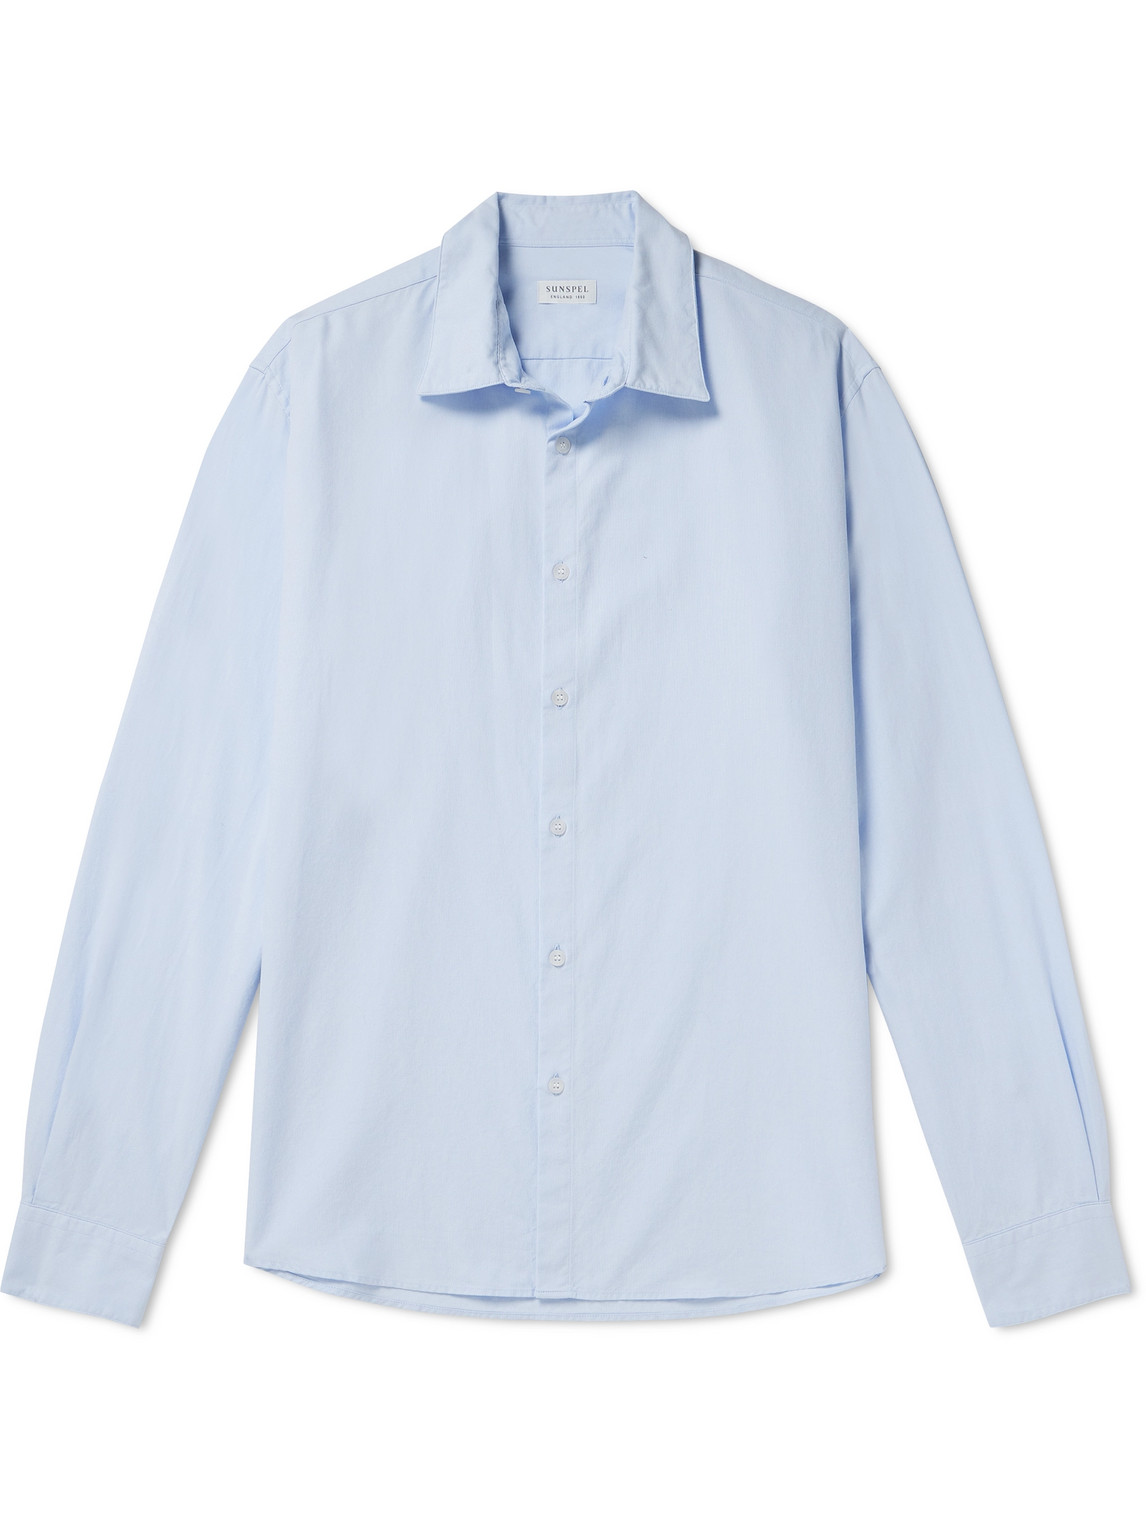 Sunspel - Cotton Oxford Shirt - Men - Blue - XL von Sunspel